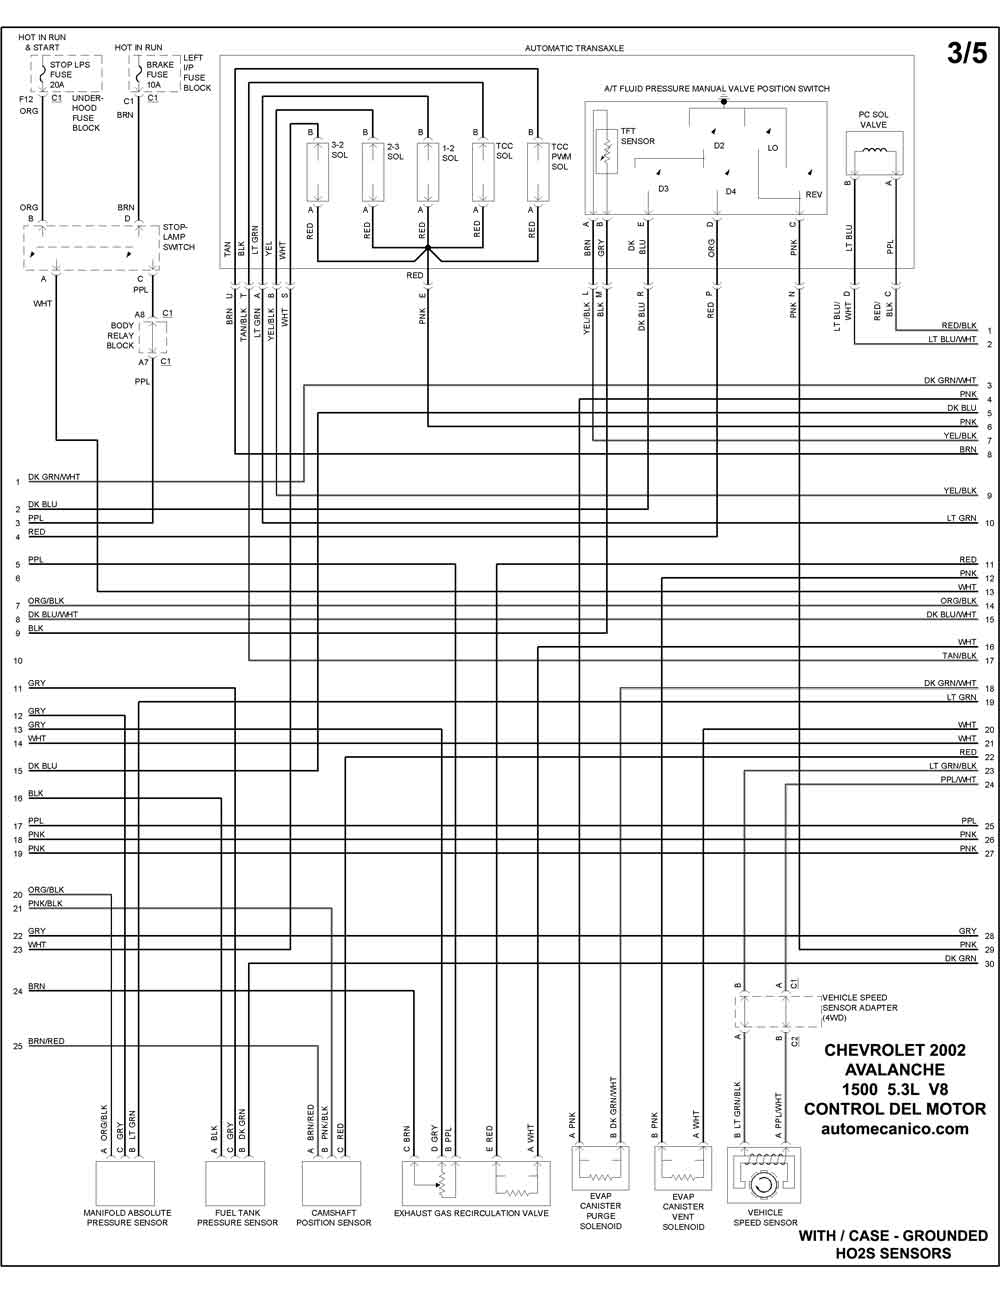 CHEVROLET - Diagramas control del motor 2002 - Graphics - Esquemas |  Vehiculos - Motores - Componentes | Mecanica automotriz